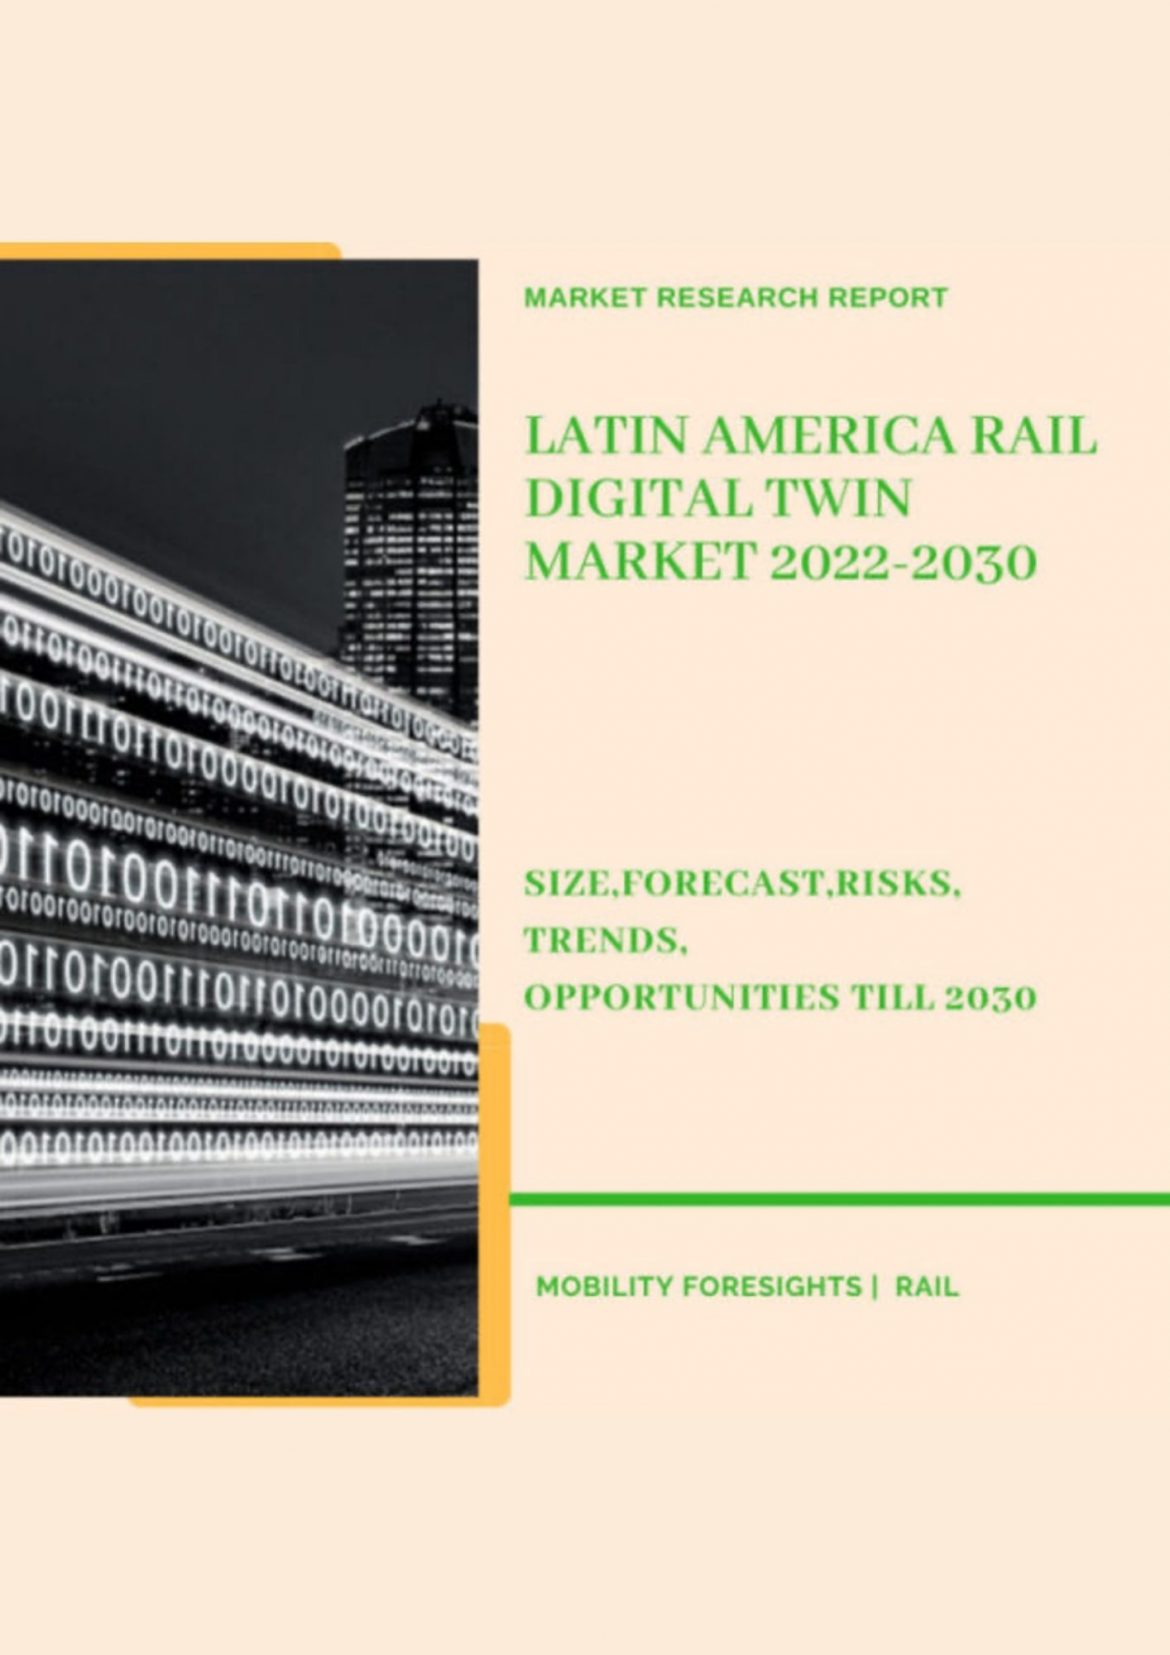 Latin America Rail Digital Twin Market 2022-2030